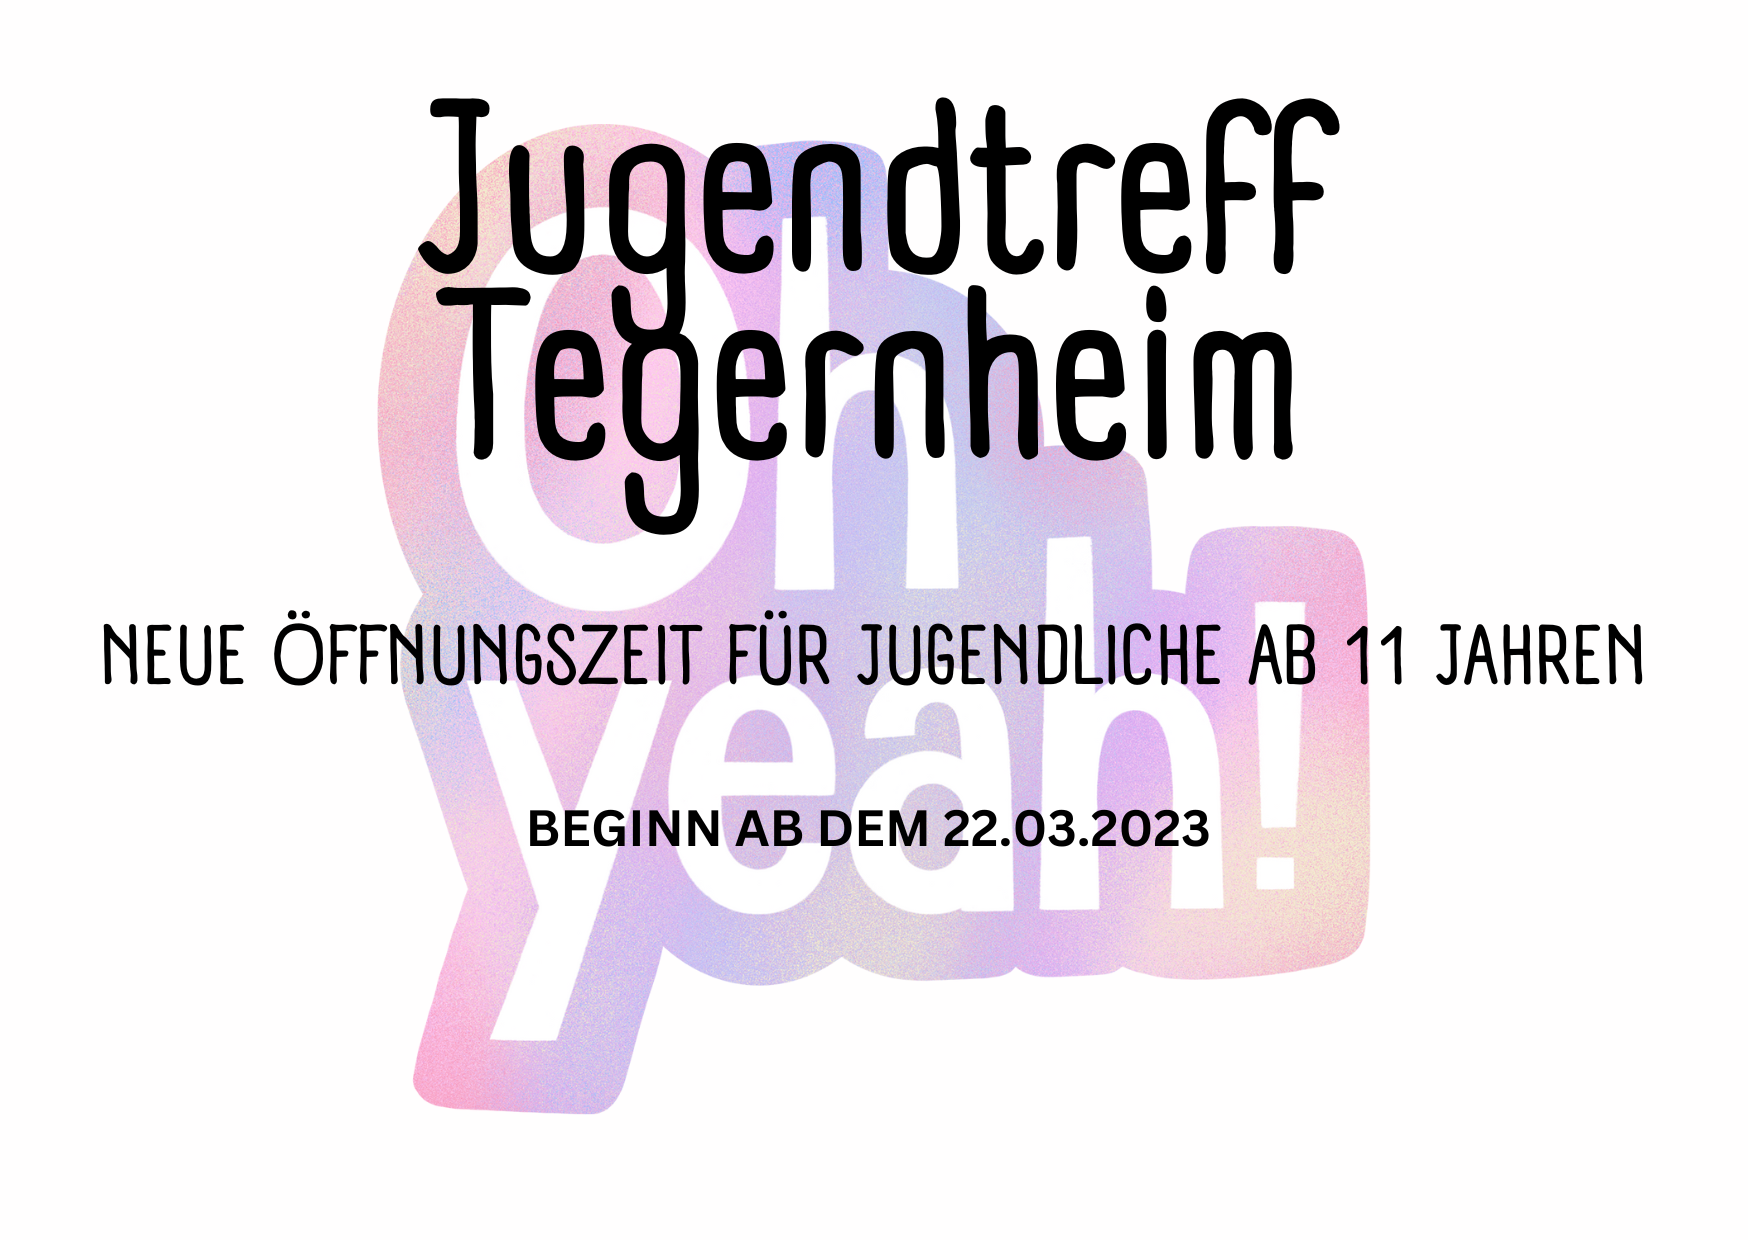 Neue Öffnungszeiten für den Jugendtreff Tegernheim